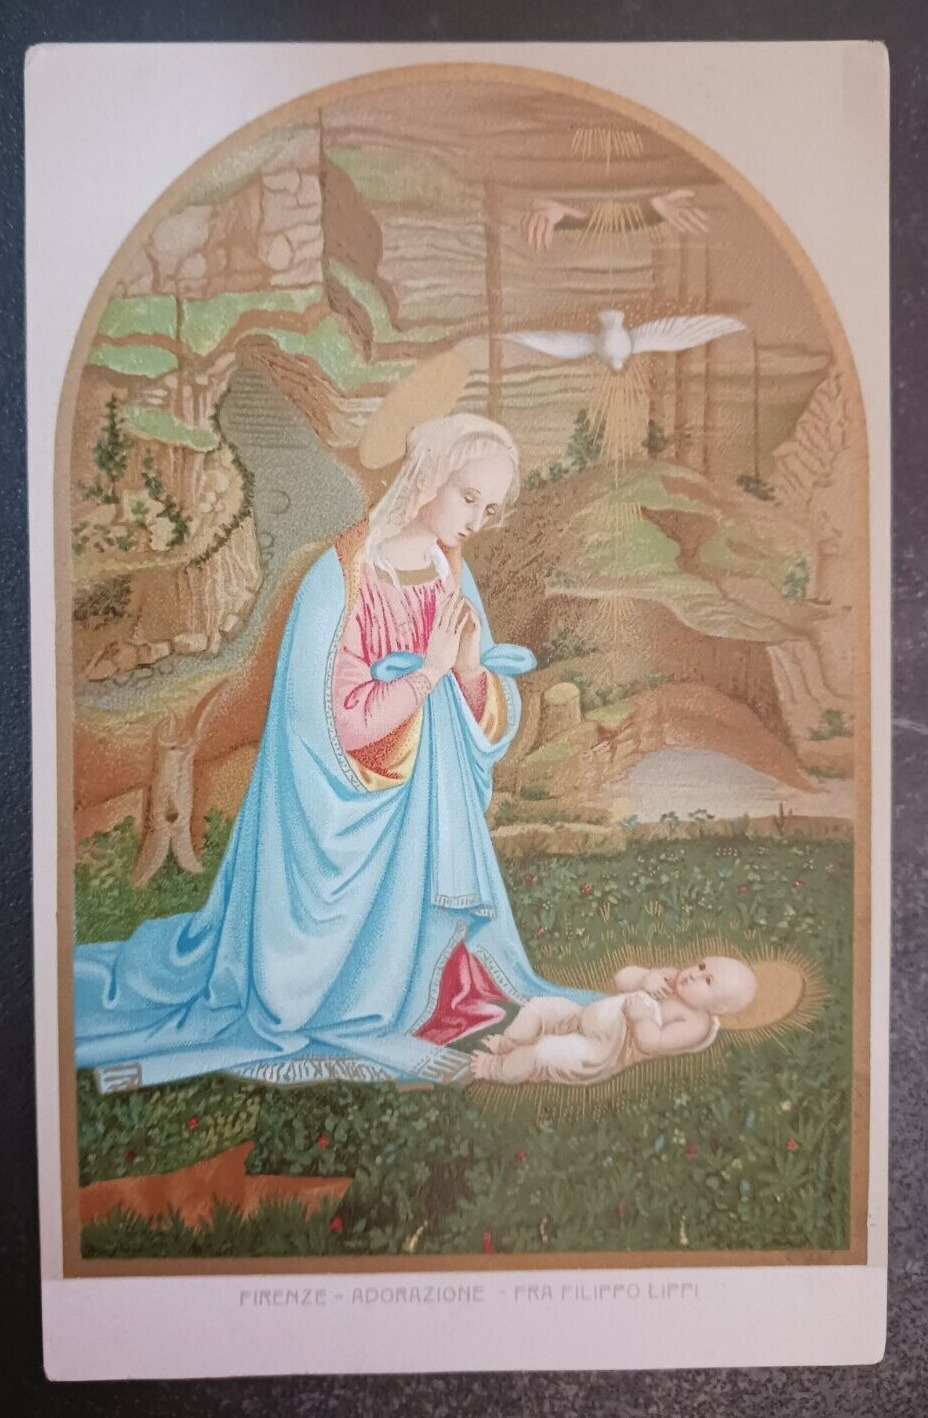 vtg postcard Adorazione - Fra Filippo Lippi E. Sborgi - Religious unposted art